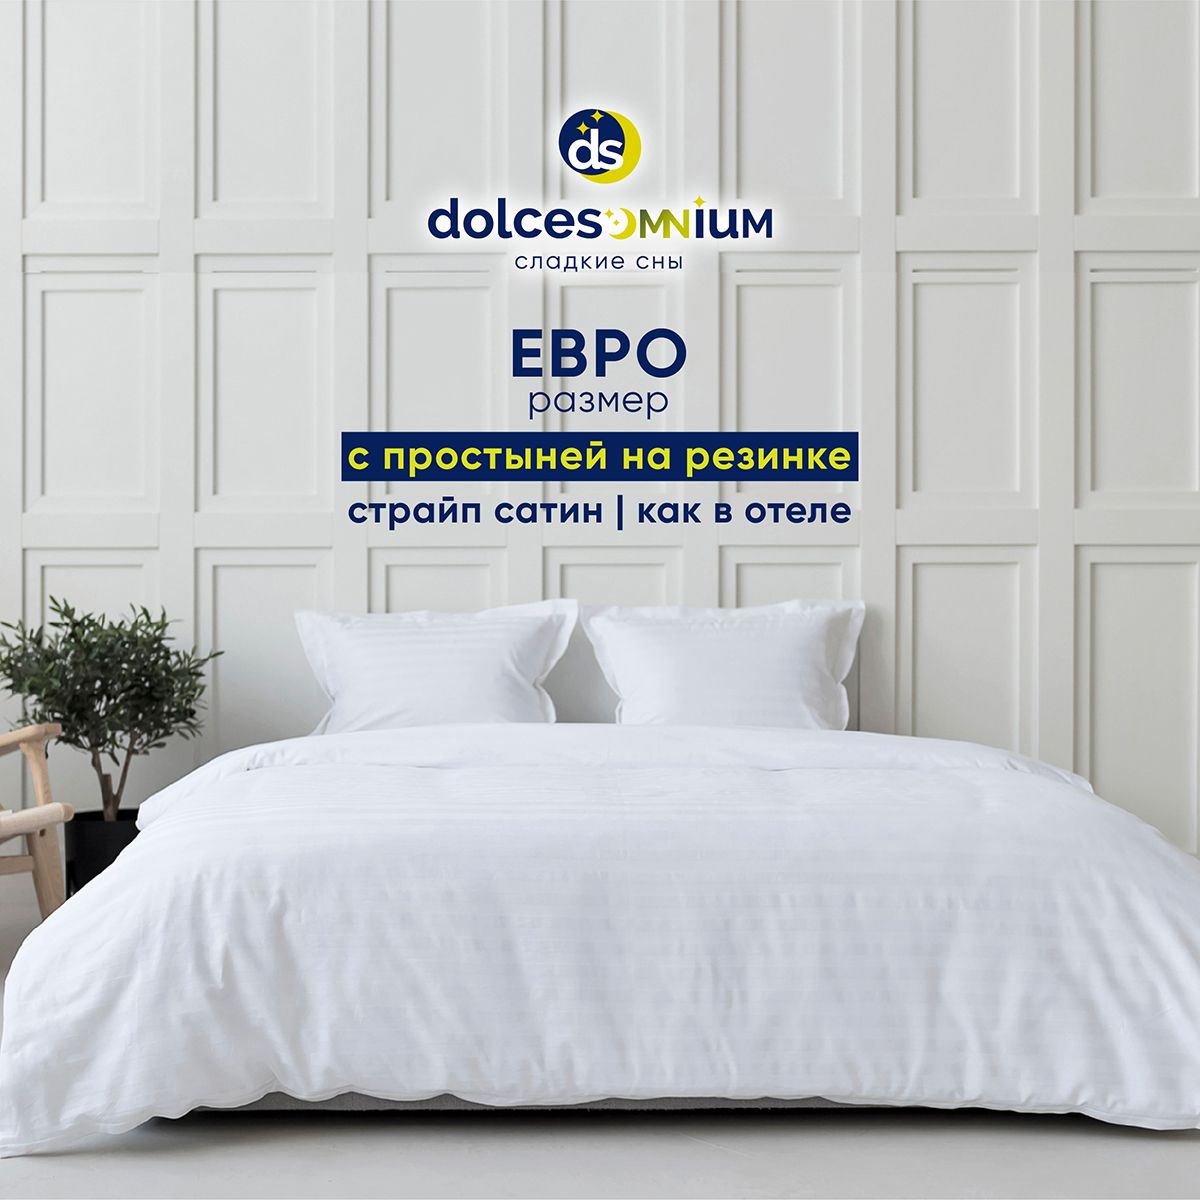 Комплект постельного белья DolceSomnium евро 990/0031668\1037